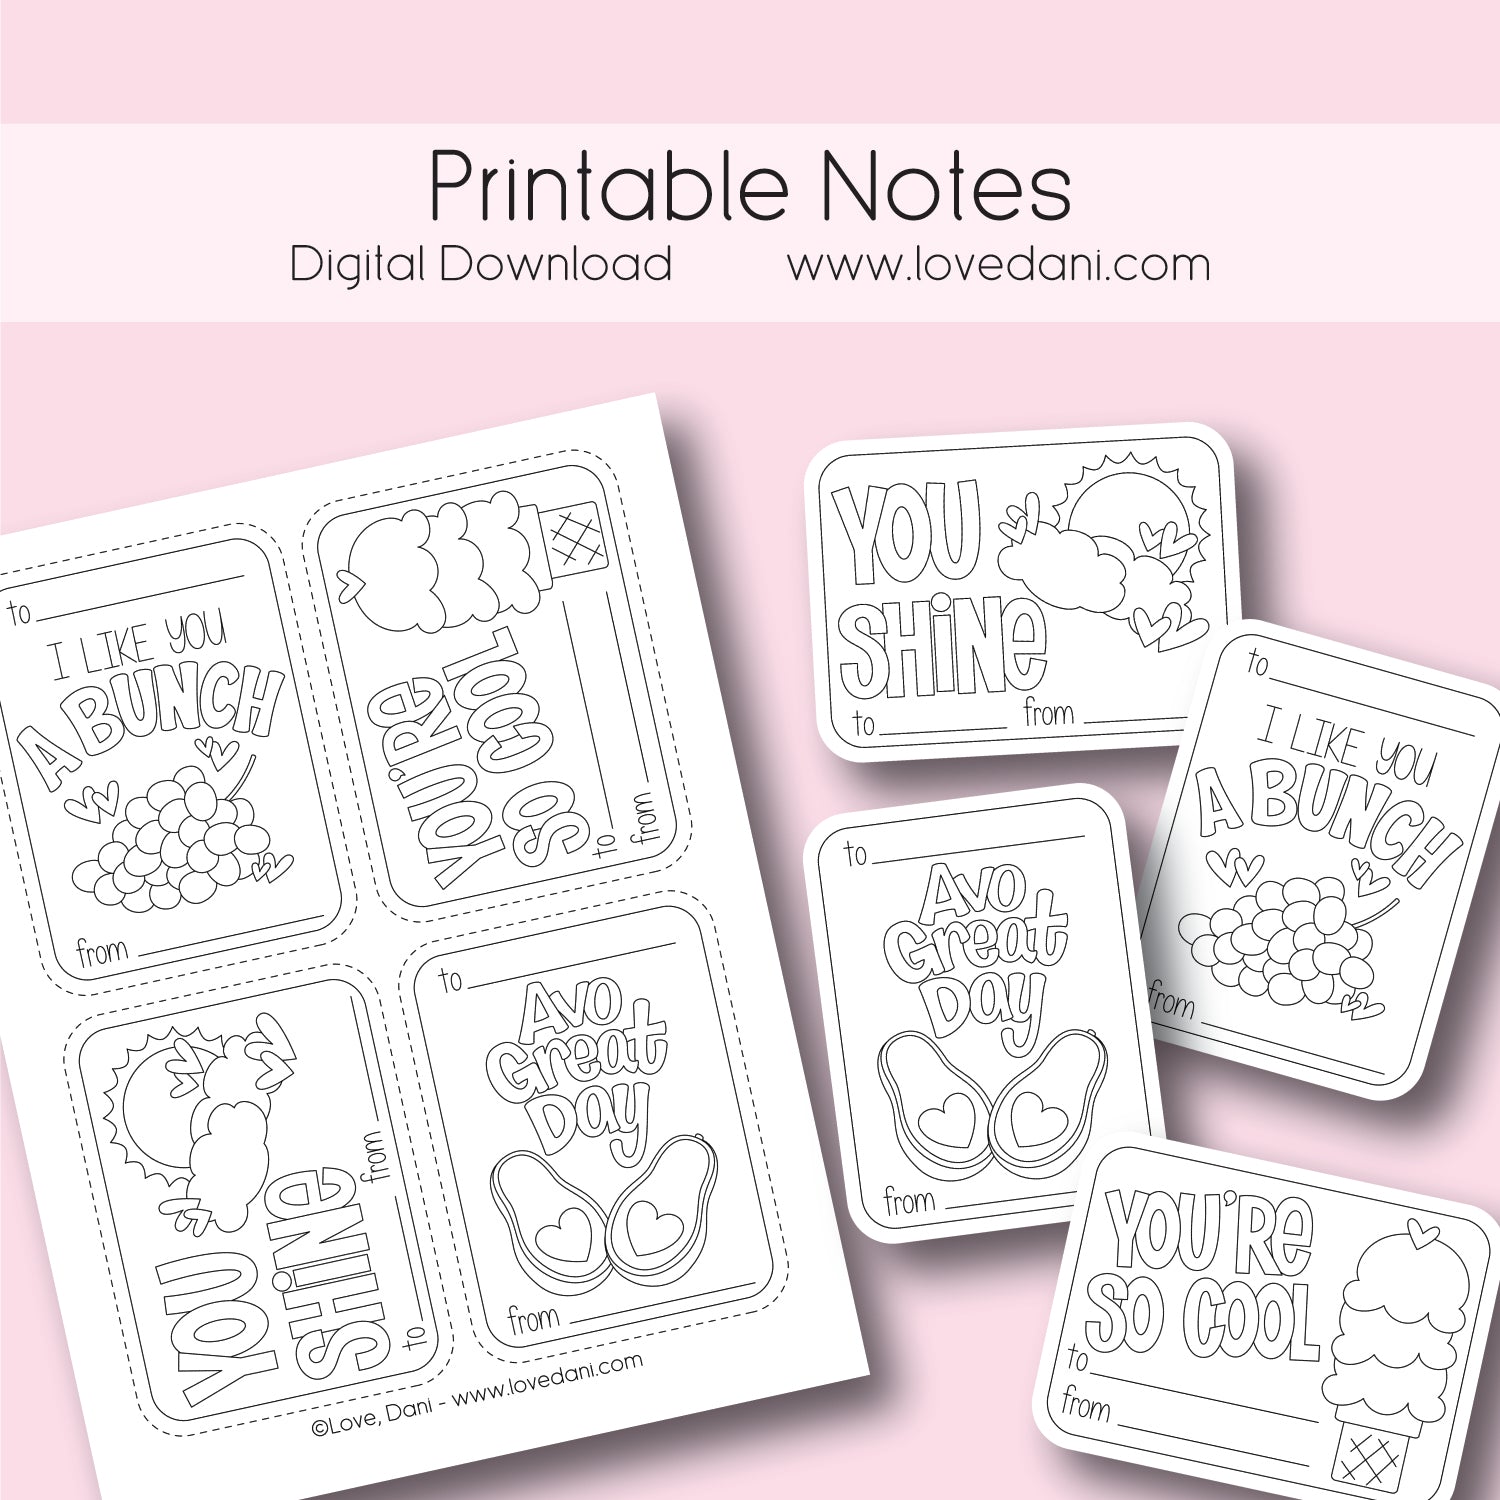 Printable Notes - Set 1 - Digital Download